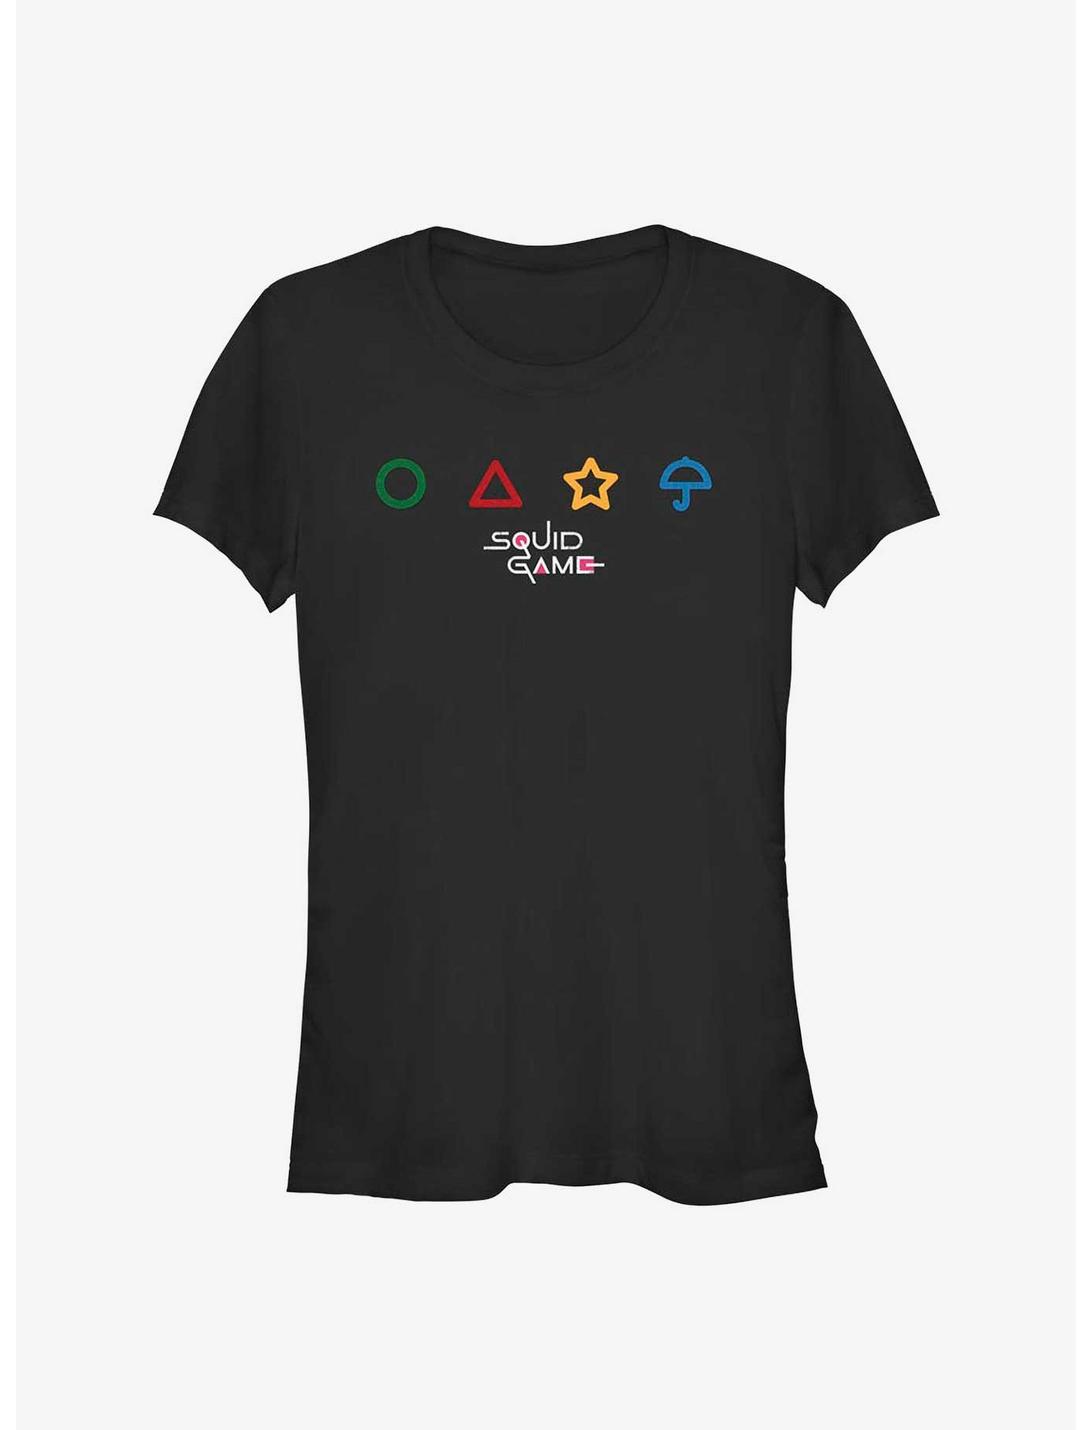 Squid Game Umbrella Game Girls T-Shirt, BLACK, hi-res